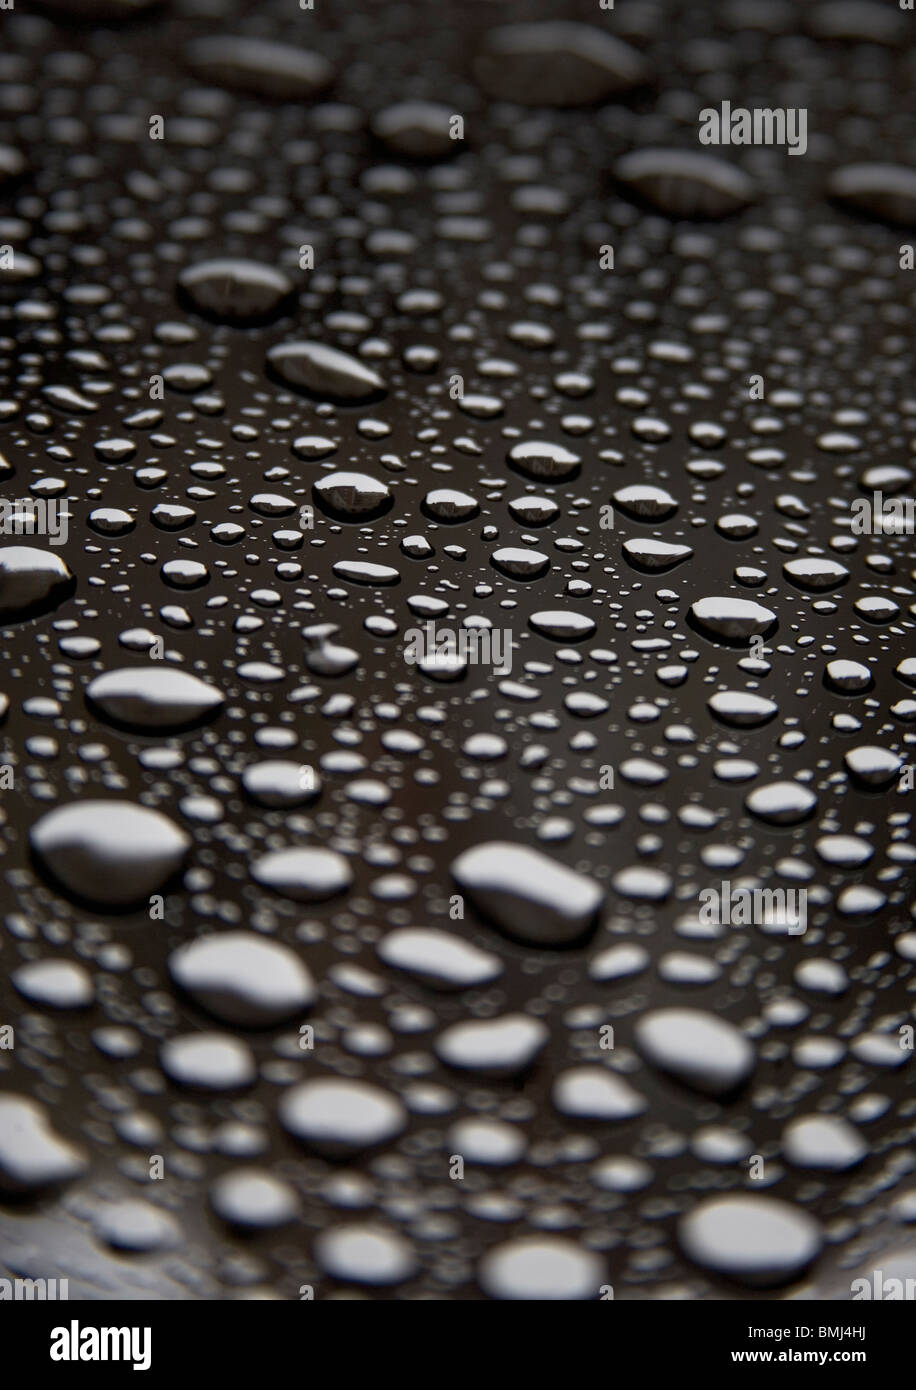 Dew drops - Image BMJ4HJ © Tetra Images / Alamy